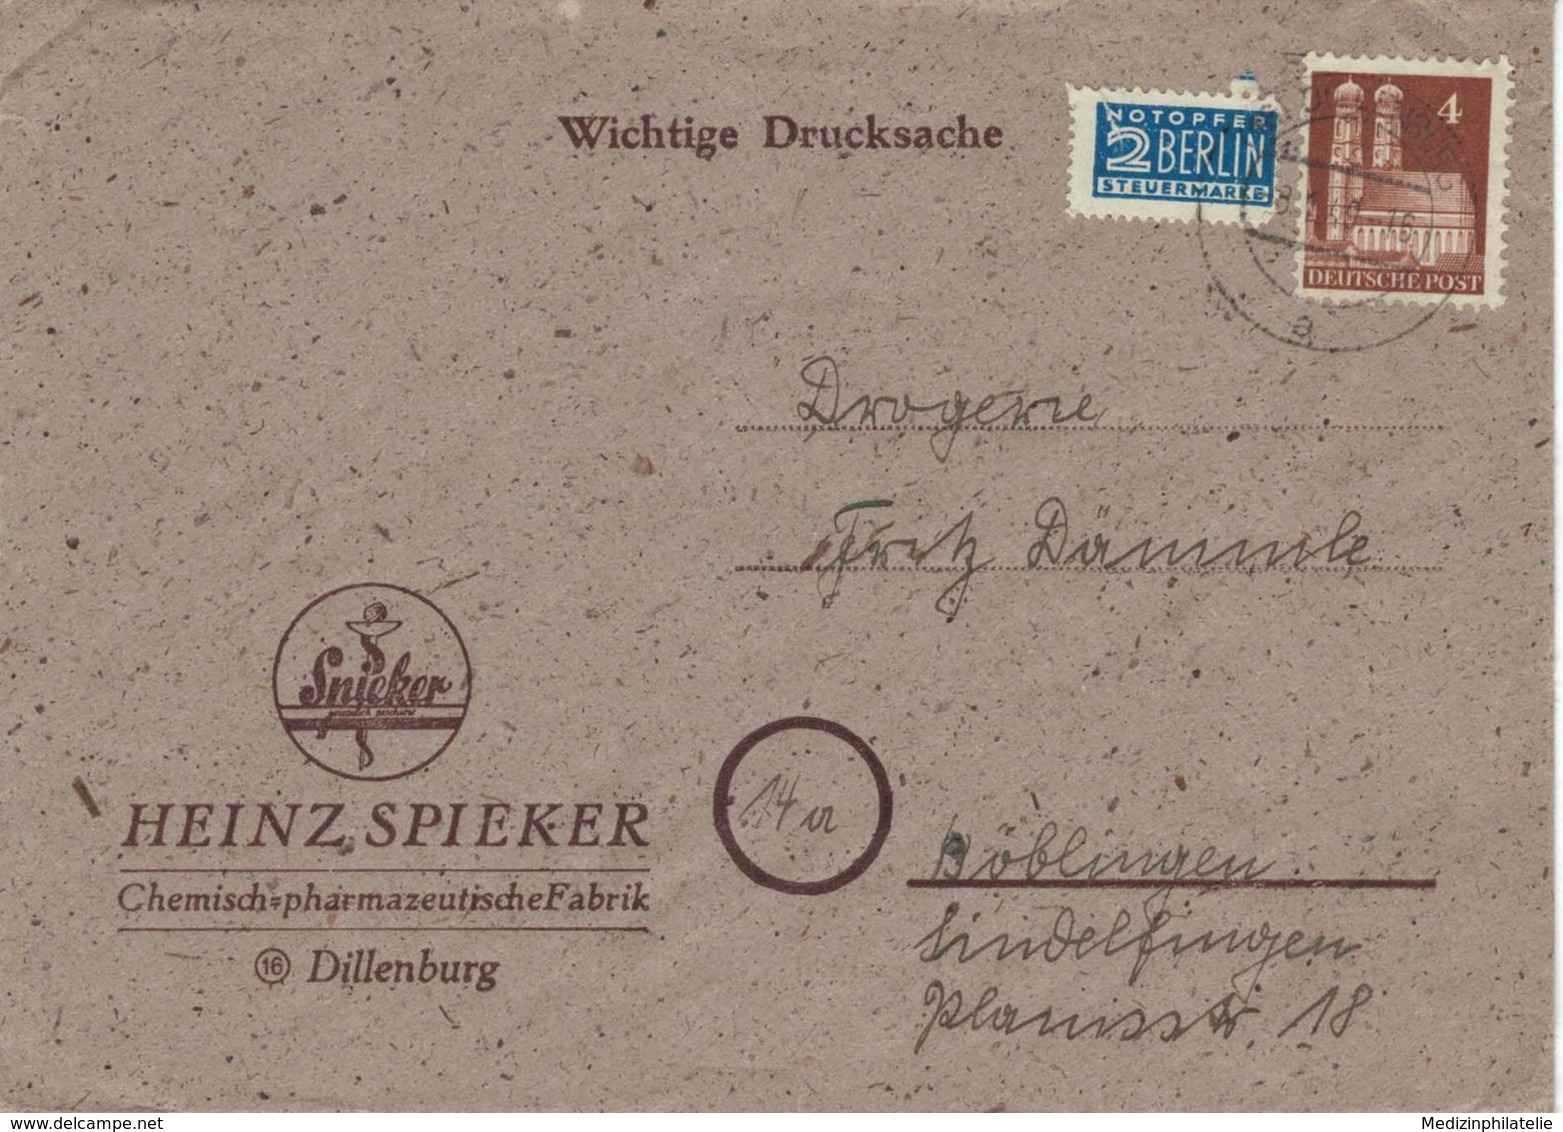 Heinz Spieker Dillenburg - Notopfer Berlin - 1949 - Frauenkirche München - Drucksache - Pharmazie